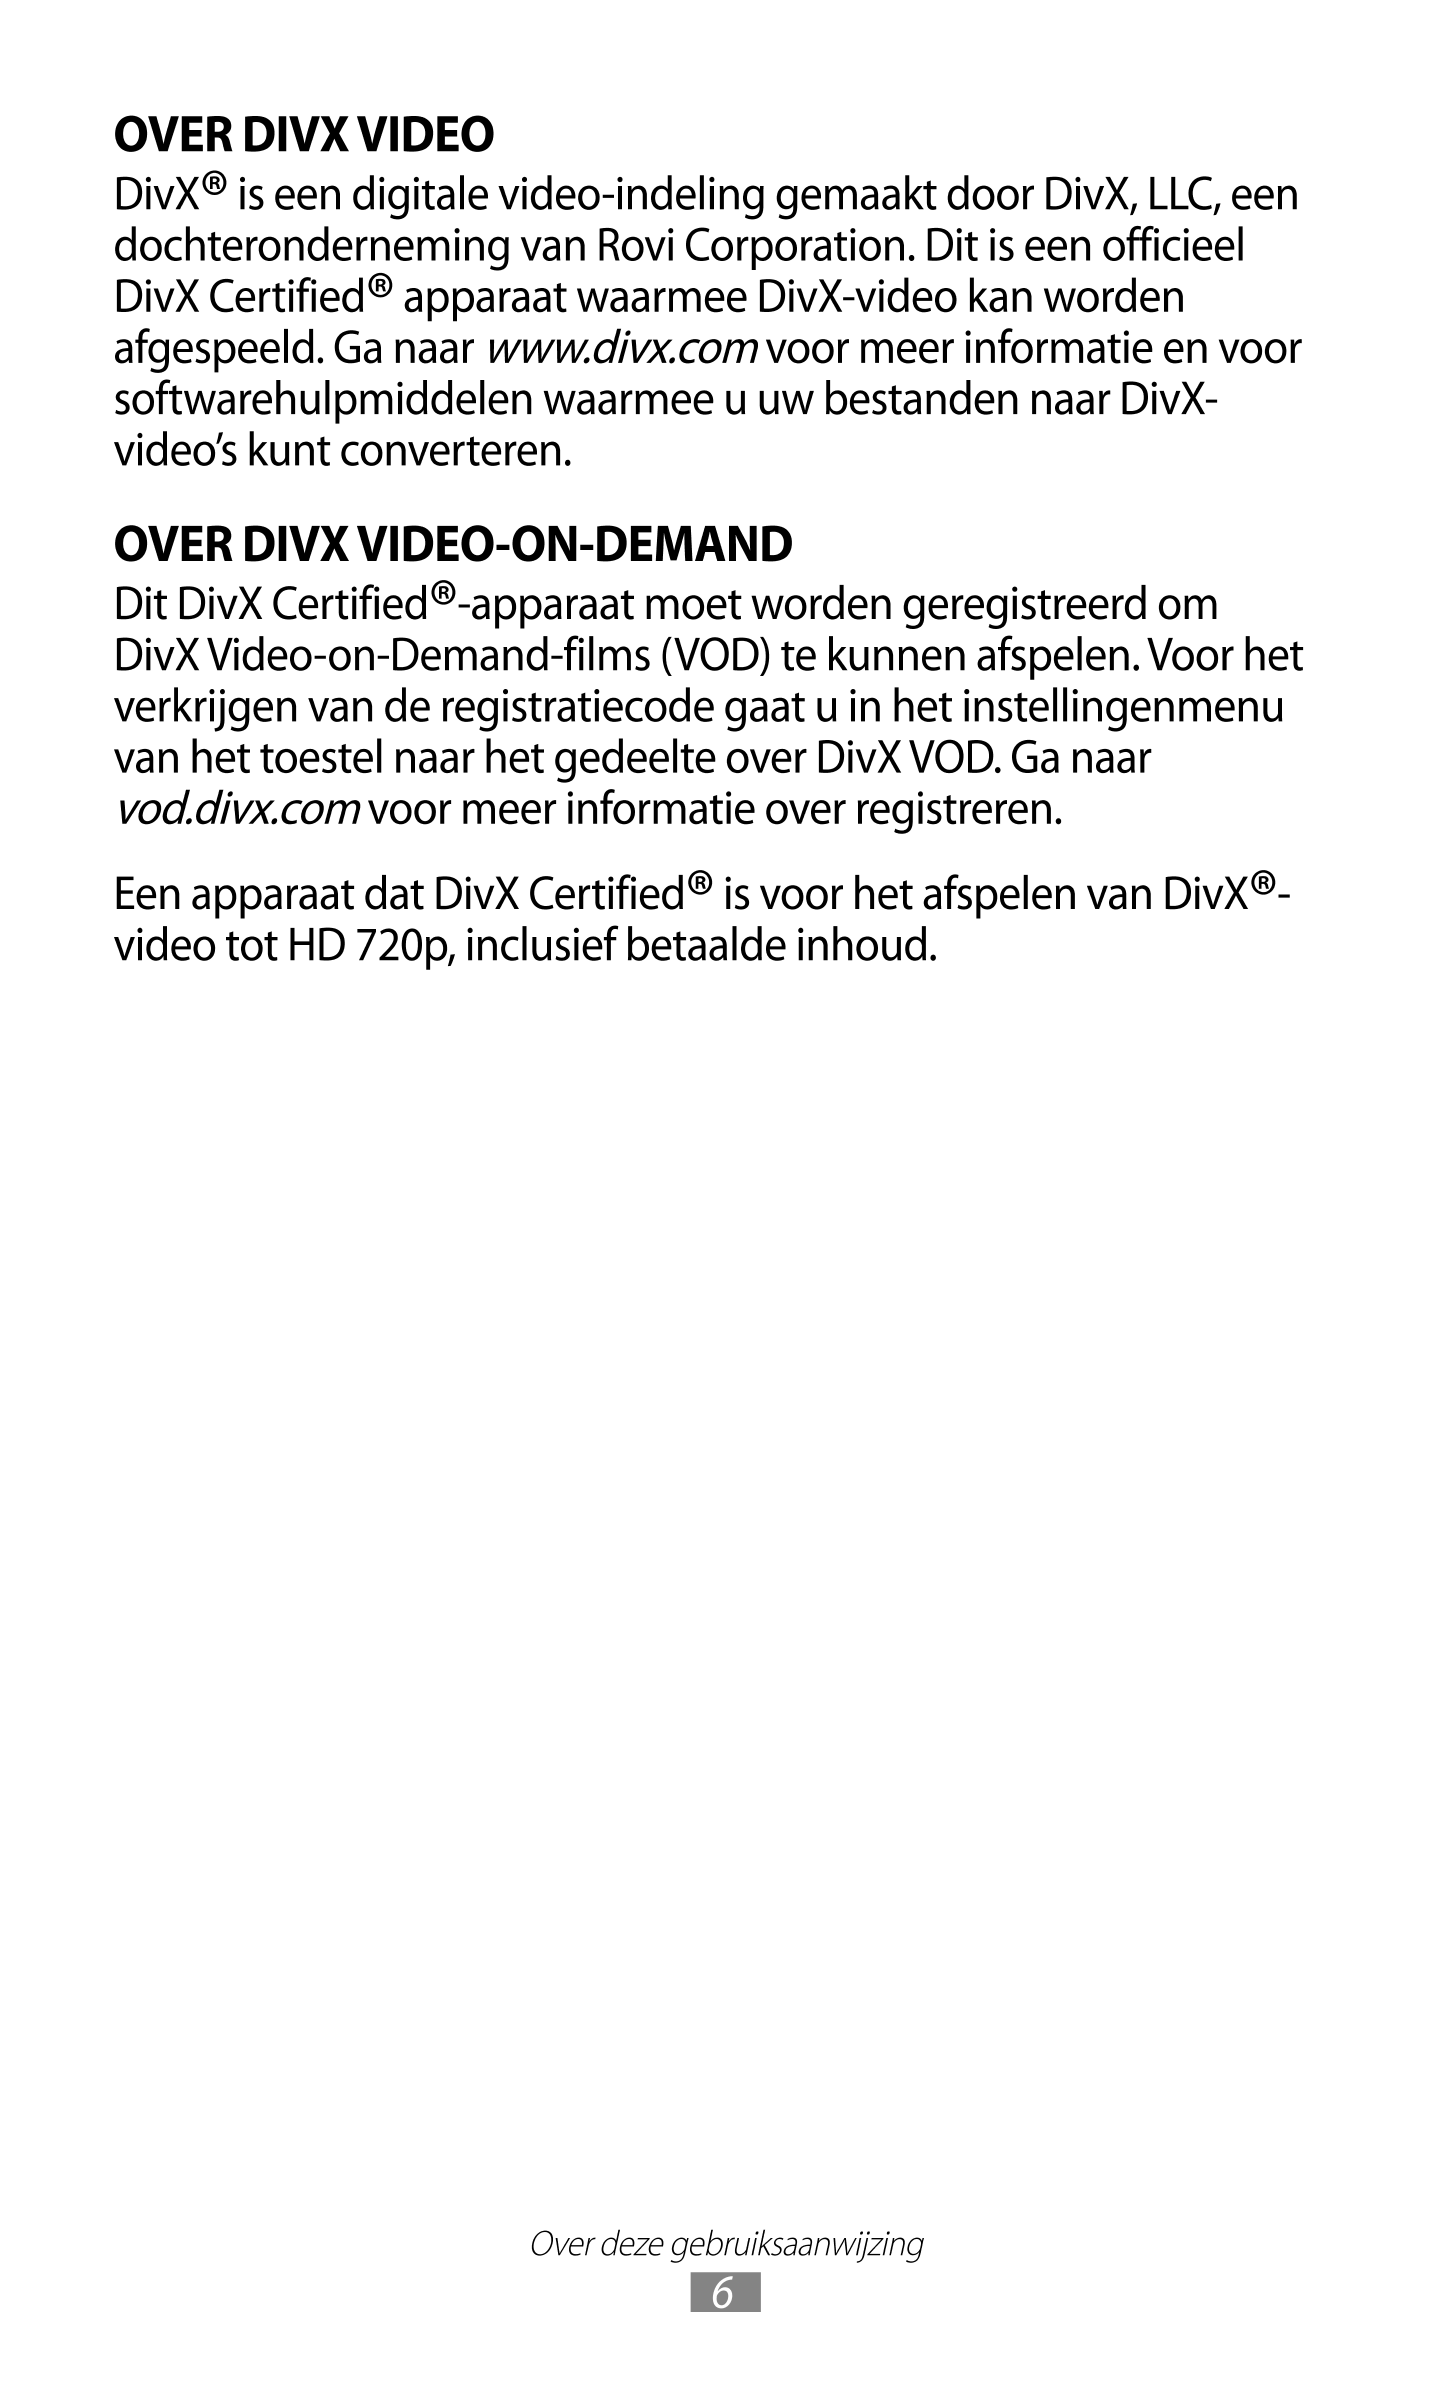 OVER DIVX VIDEO
DivX® is een digitale video-indeling gemaakt door DivX, LLC, een 
dochteronderneming van Rovi Corporation. Dit i